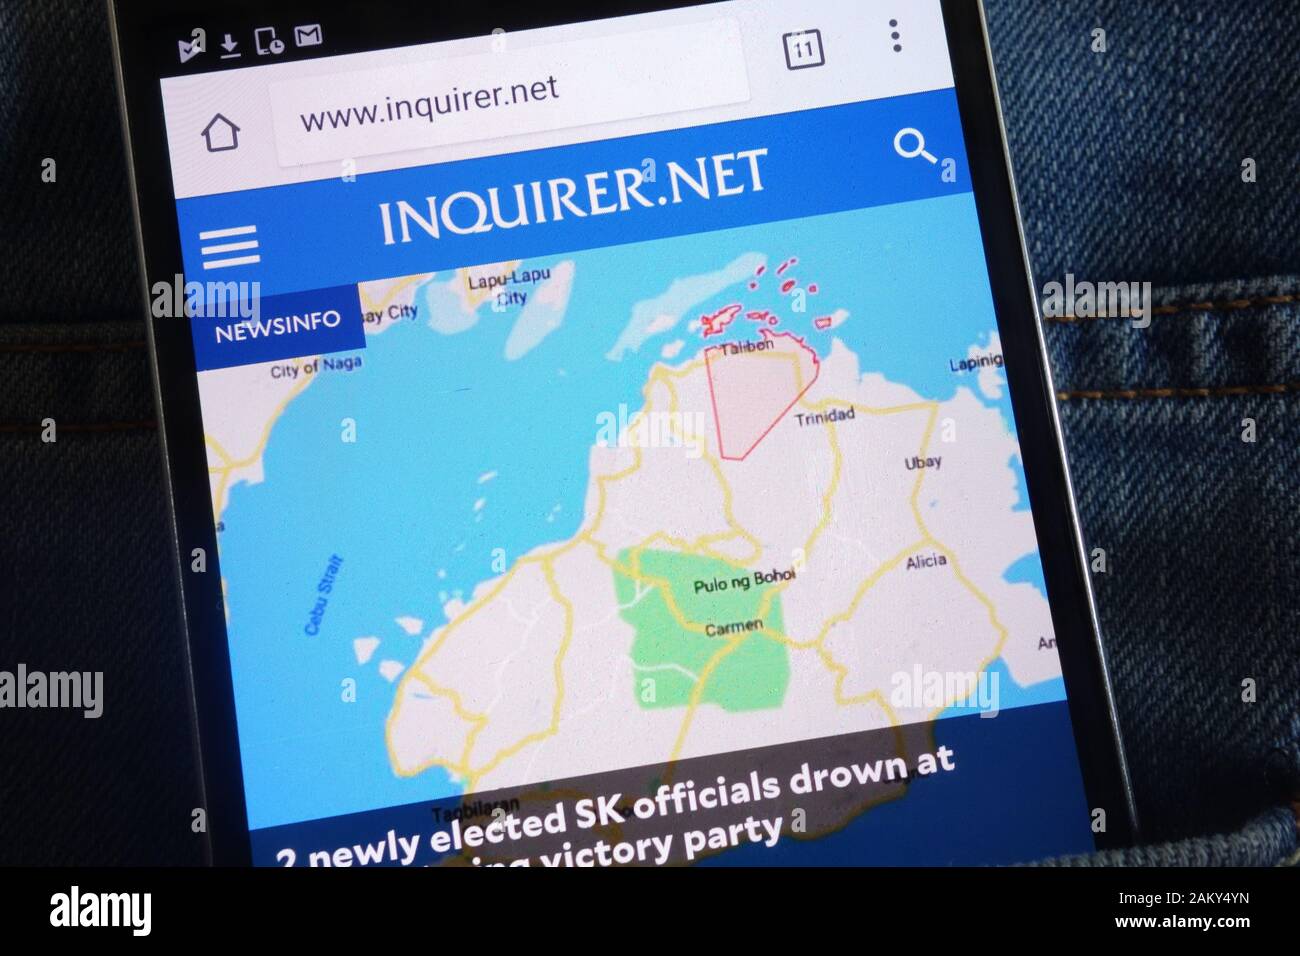 Site web de l'Inquirer (inquirer.net) affiché sur smartphone caché dans la poche de jeans Banque D'Images